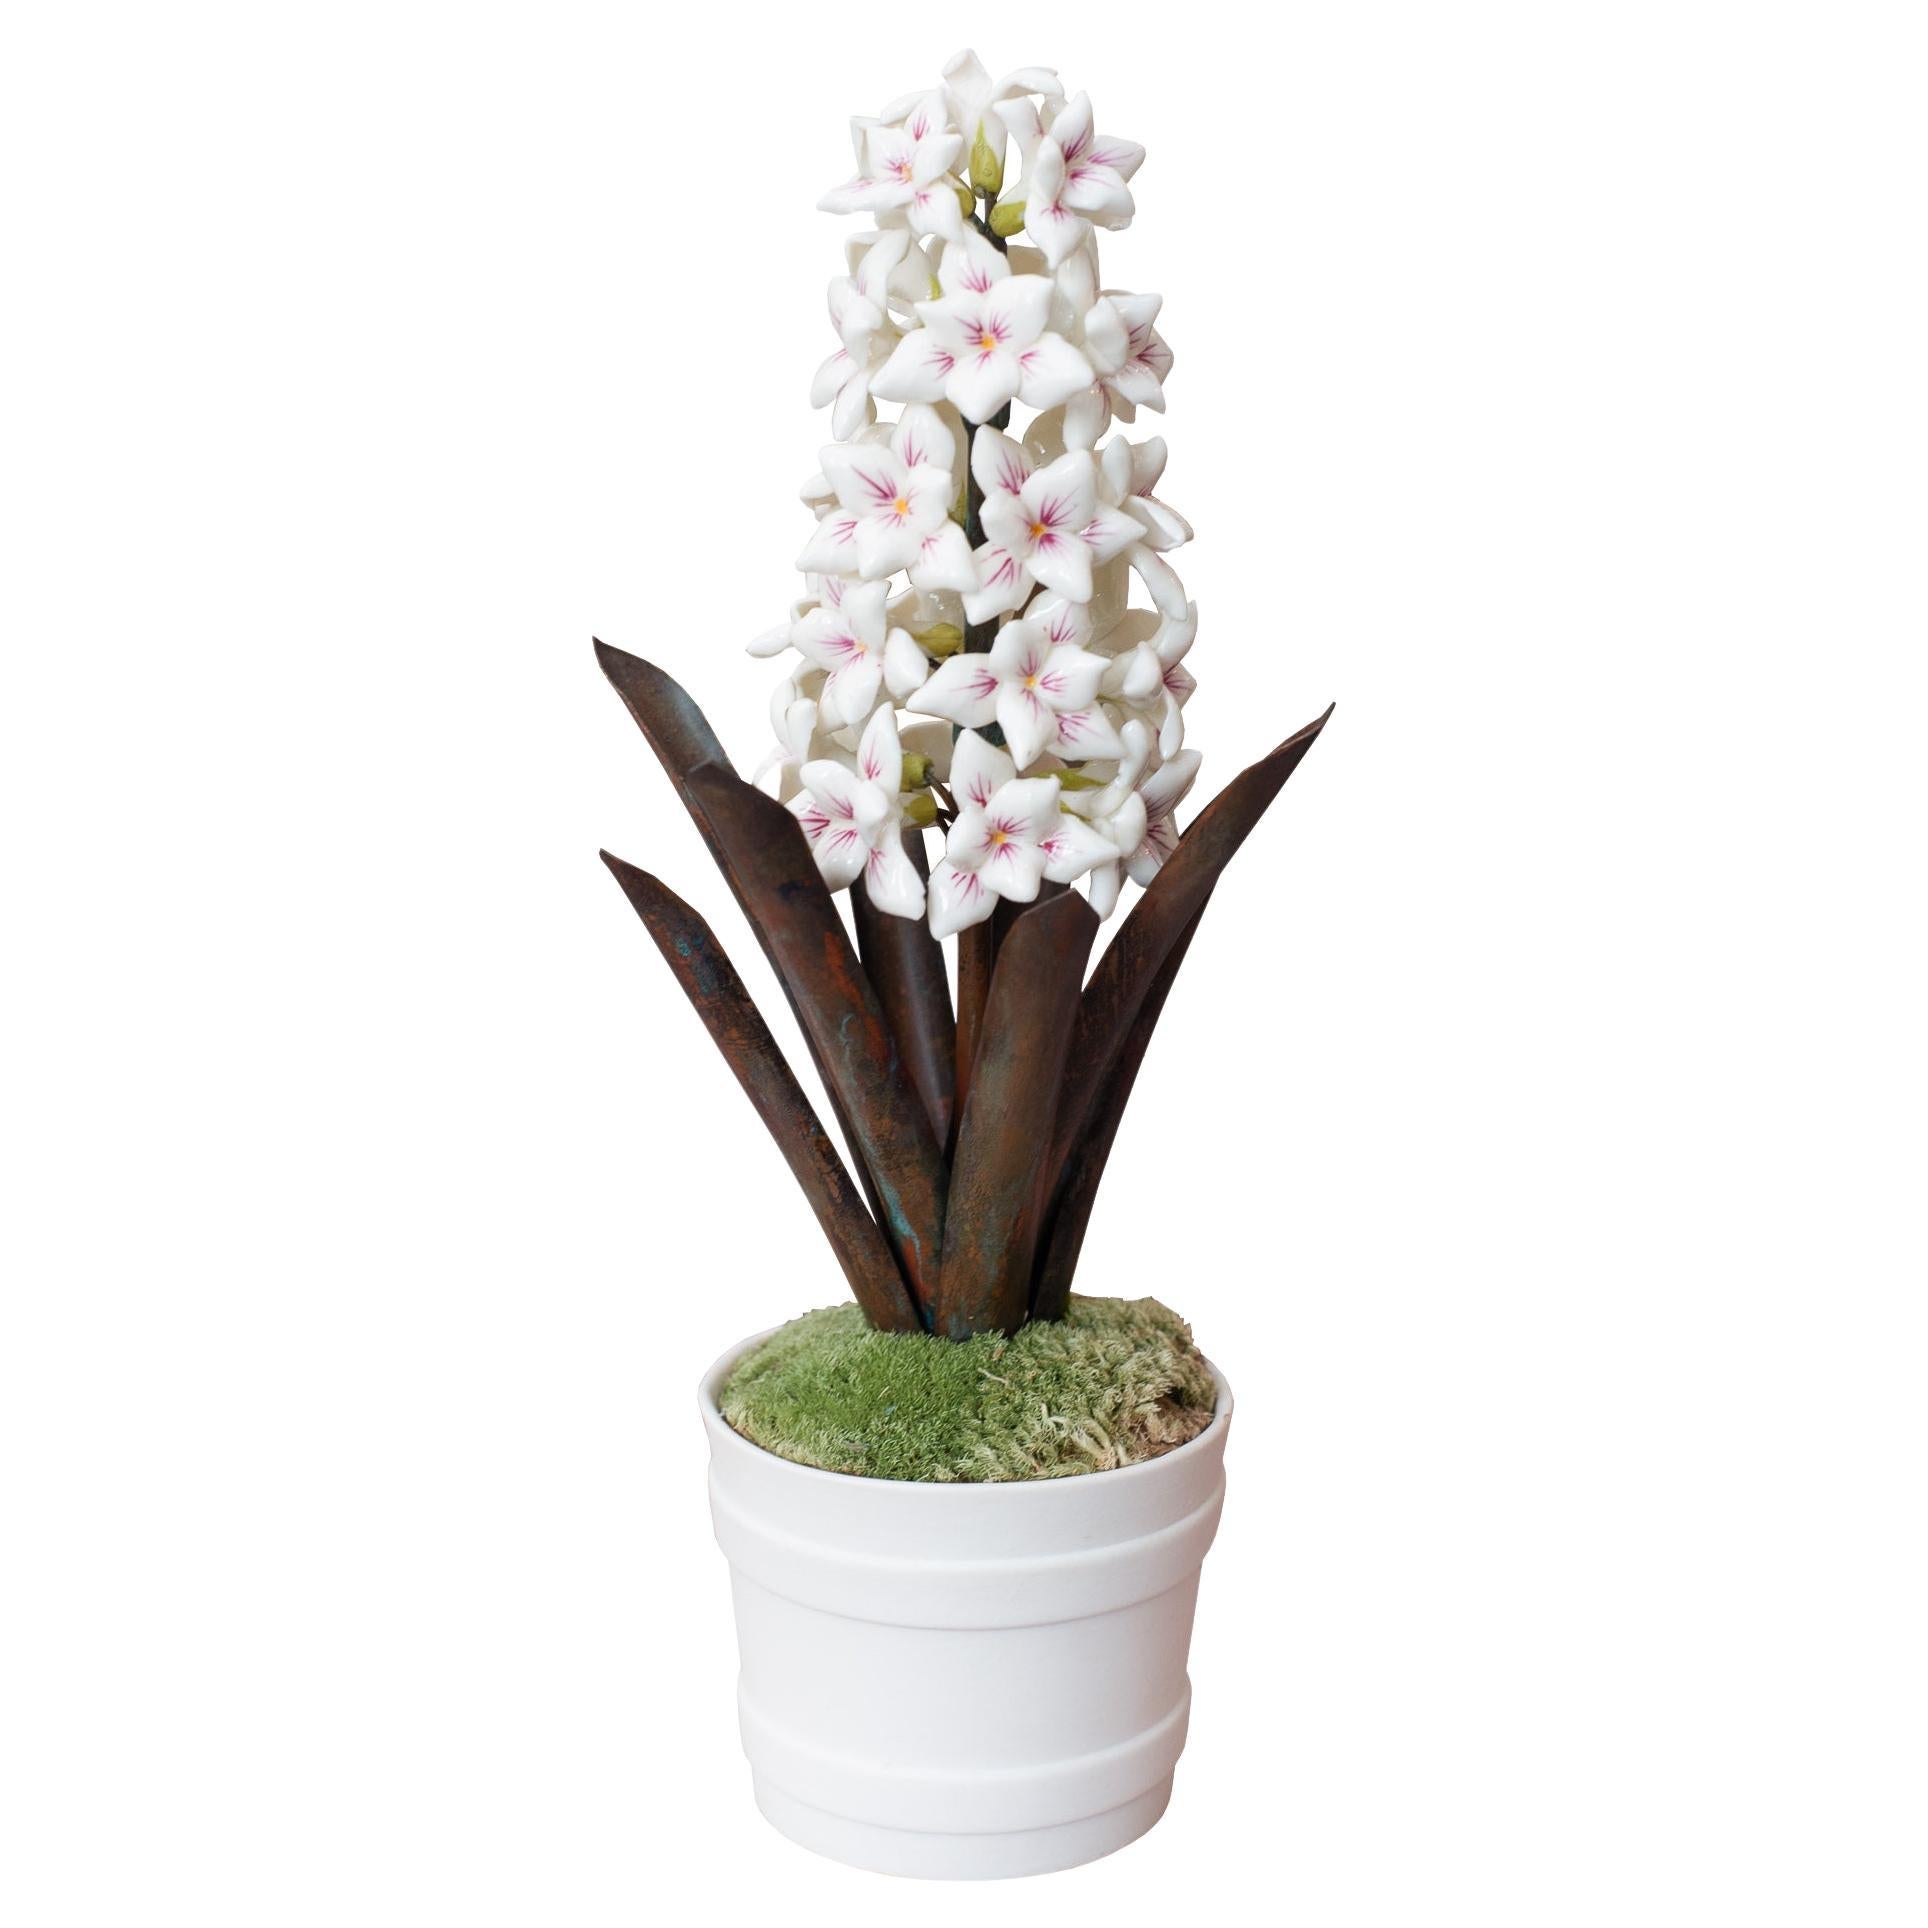 Samuel Mazy Glazed White & Pink Porcelain Hyacinth Sculpture For Sale